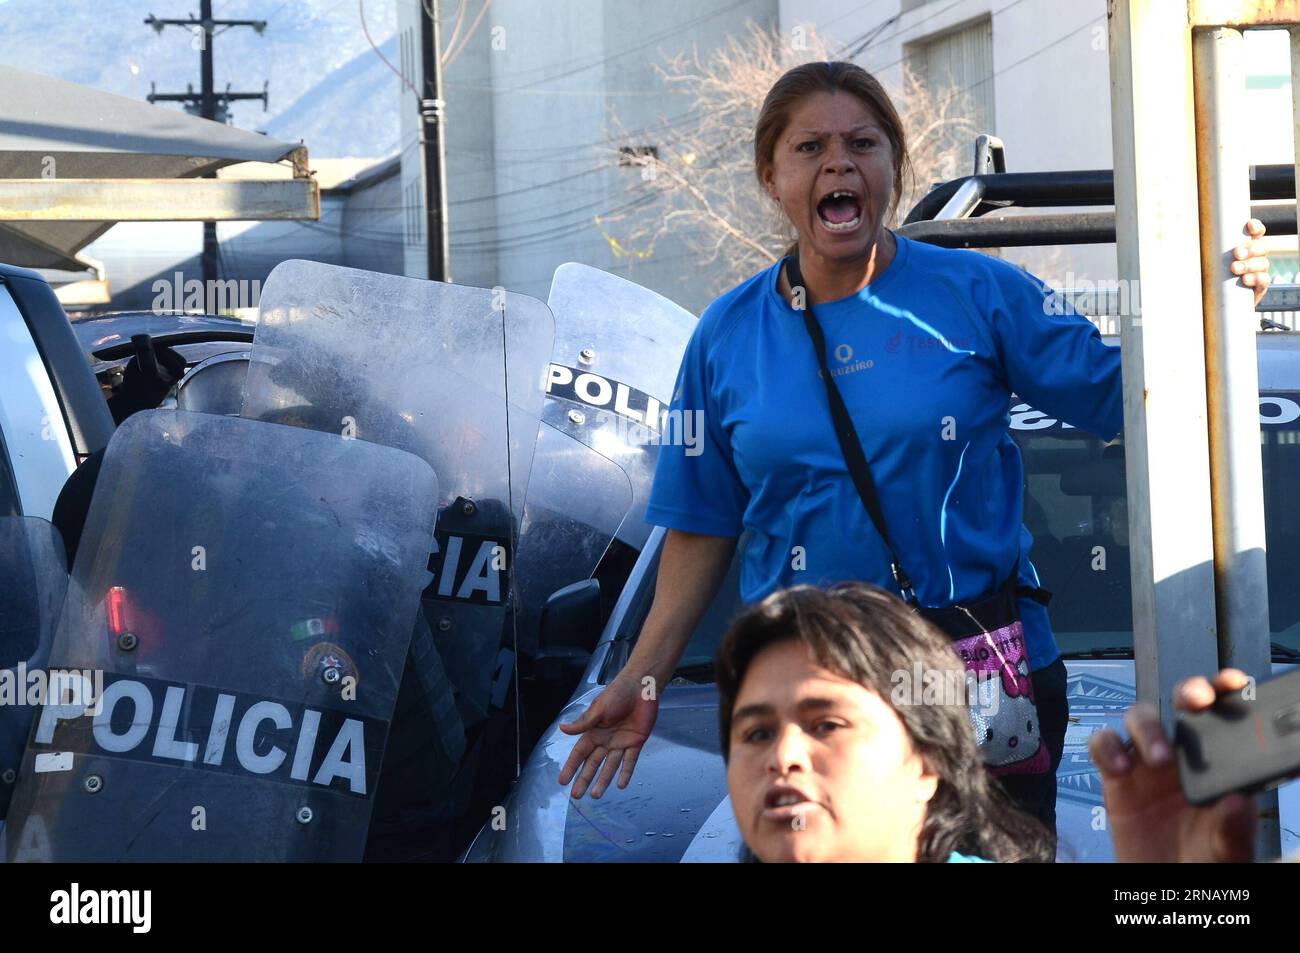 (160211) -- MONTERREY, le 11 février 2016 -- le membre de la famille d'un détenu réagit alors que des résidents attendent des renseignements à l'extérieur de la prison Topo Chico, à Monterrey, dans l'État de Nuevo Leon, au Mexique, le 11 février 2016. Jaime Rodriguez Calderon, gouverneur de Nuevo Leon, a informé lors d'une conférence de presse que 52 personnes avaient été tuées et 12 blessées après qu'une bagarre eut éclaté entre deux fractions rivales de détenus à l'intérieur de la prison de Topo Chico. ABC) (ce) MEXICO-MONTERREY-SECURITY-PRISON e ABC PUBLICATIONxNOTxINxCHN Monterrey fév 11 2016 le membre de la famille du détenu To réagit alors que les résidents attendent des renseignements à l'extérieur Banque D'Images